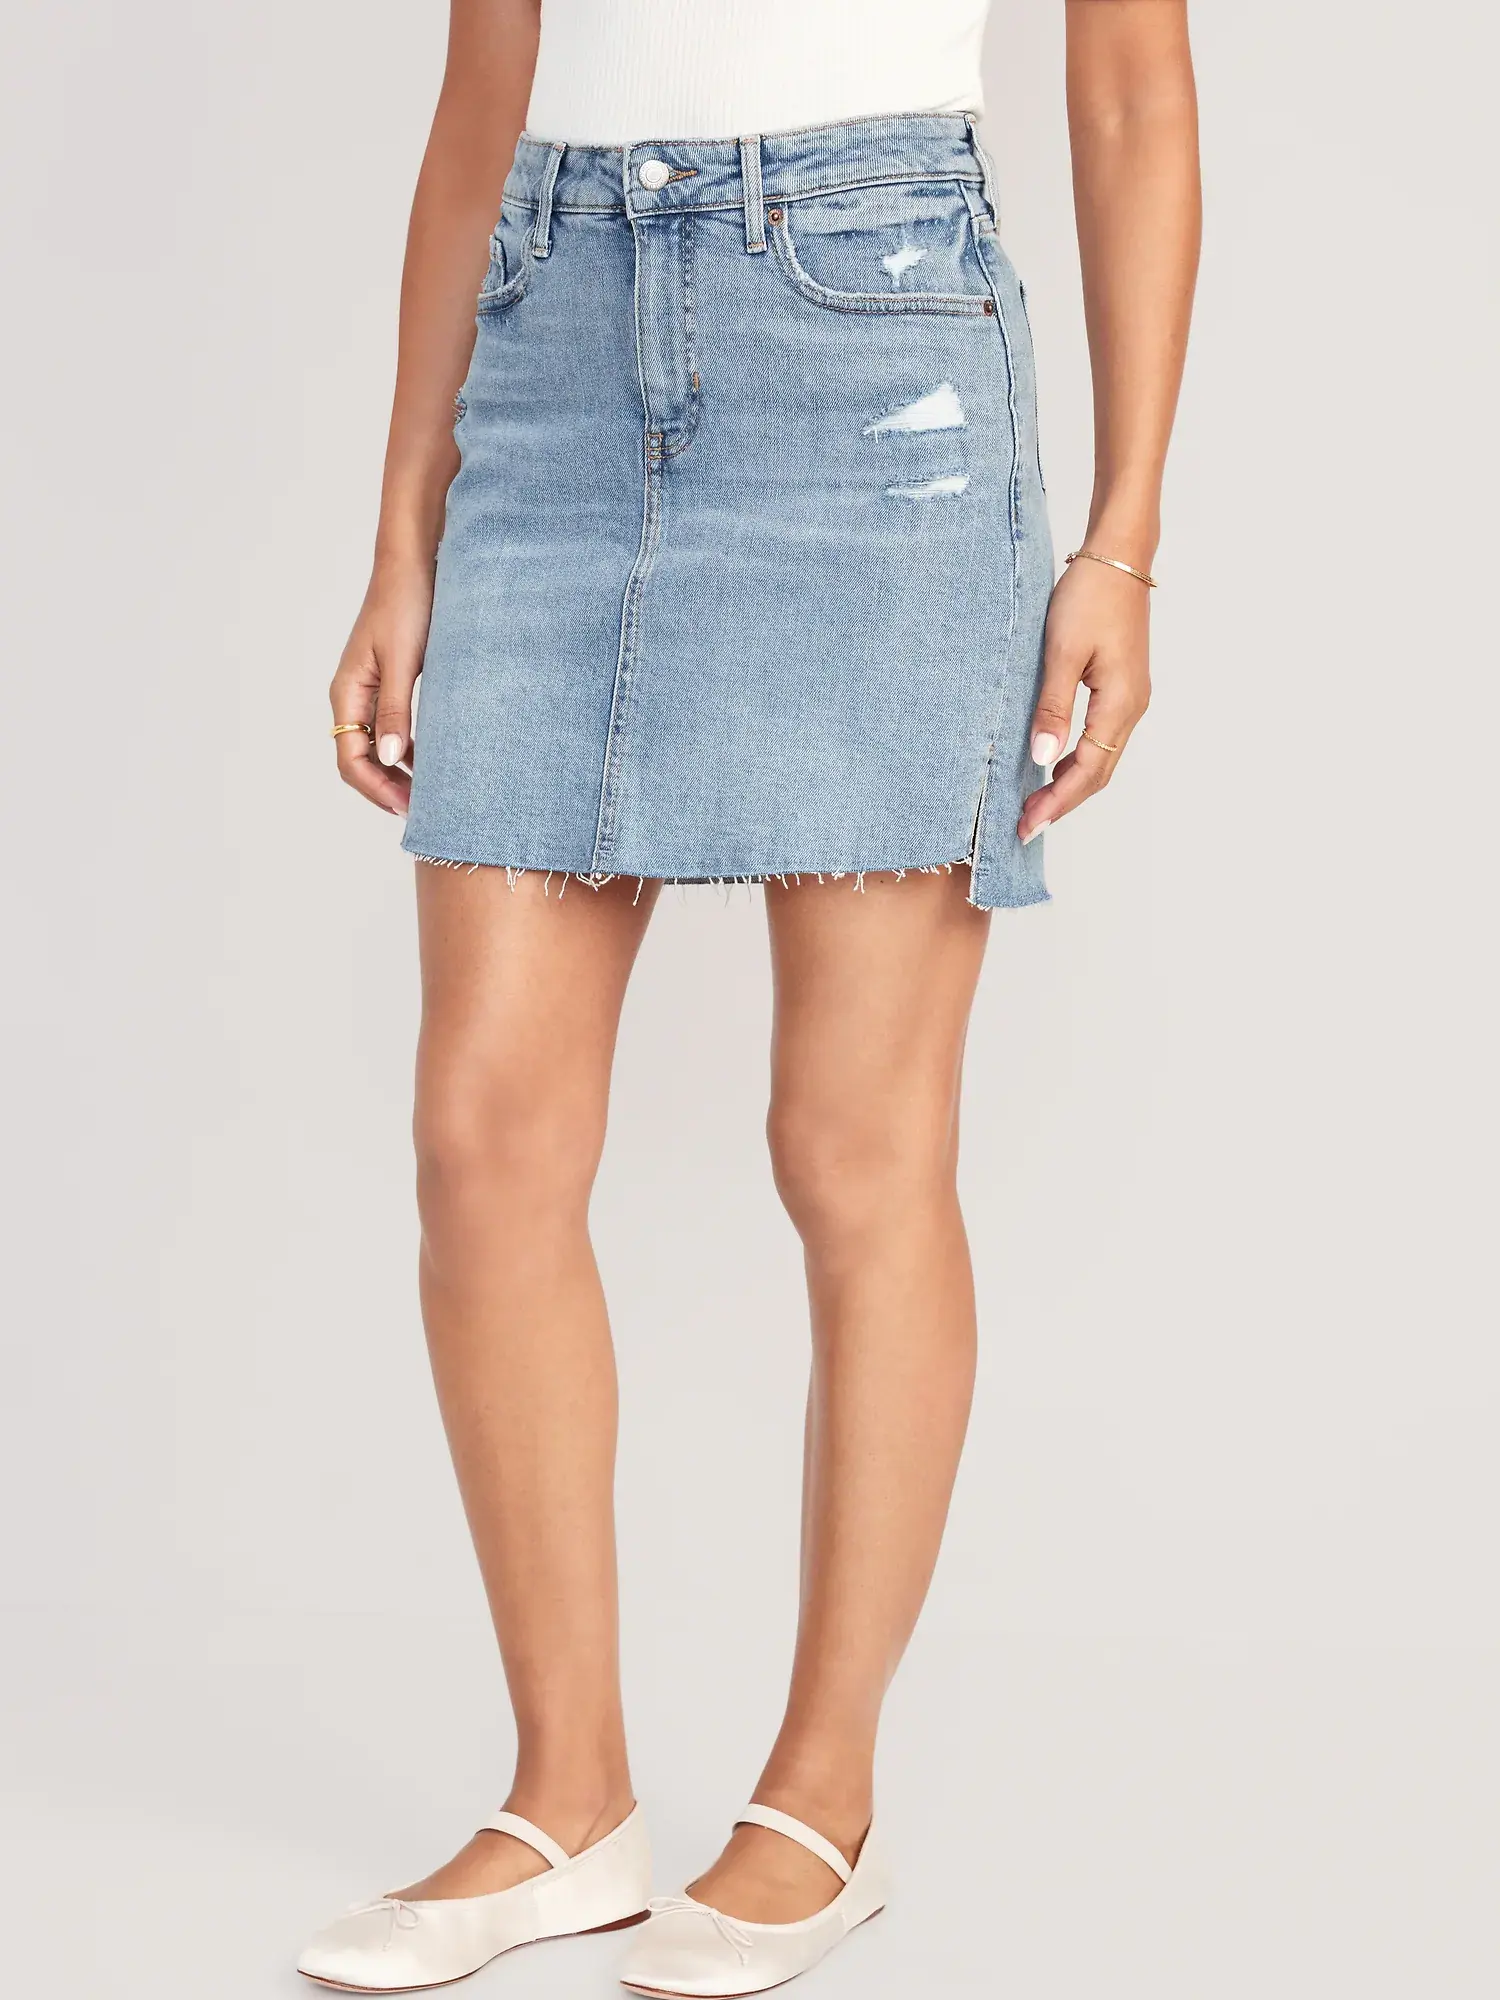 Old Navy High-Waisted OG Straight Mini Cut-Off Jean Skirt for Women multi. 1